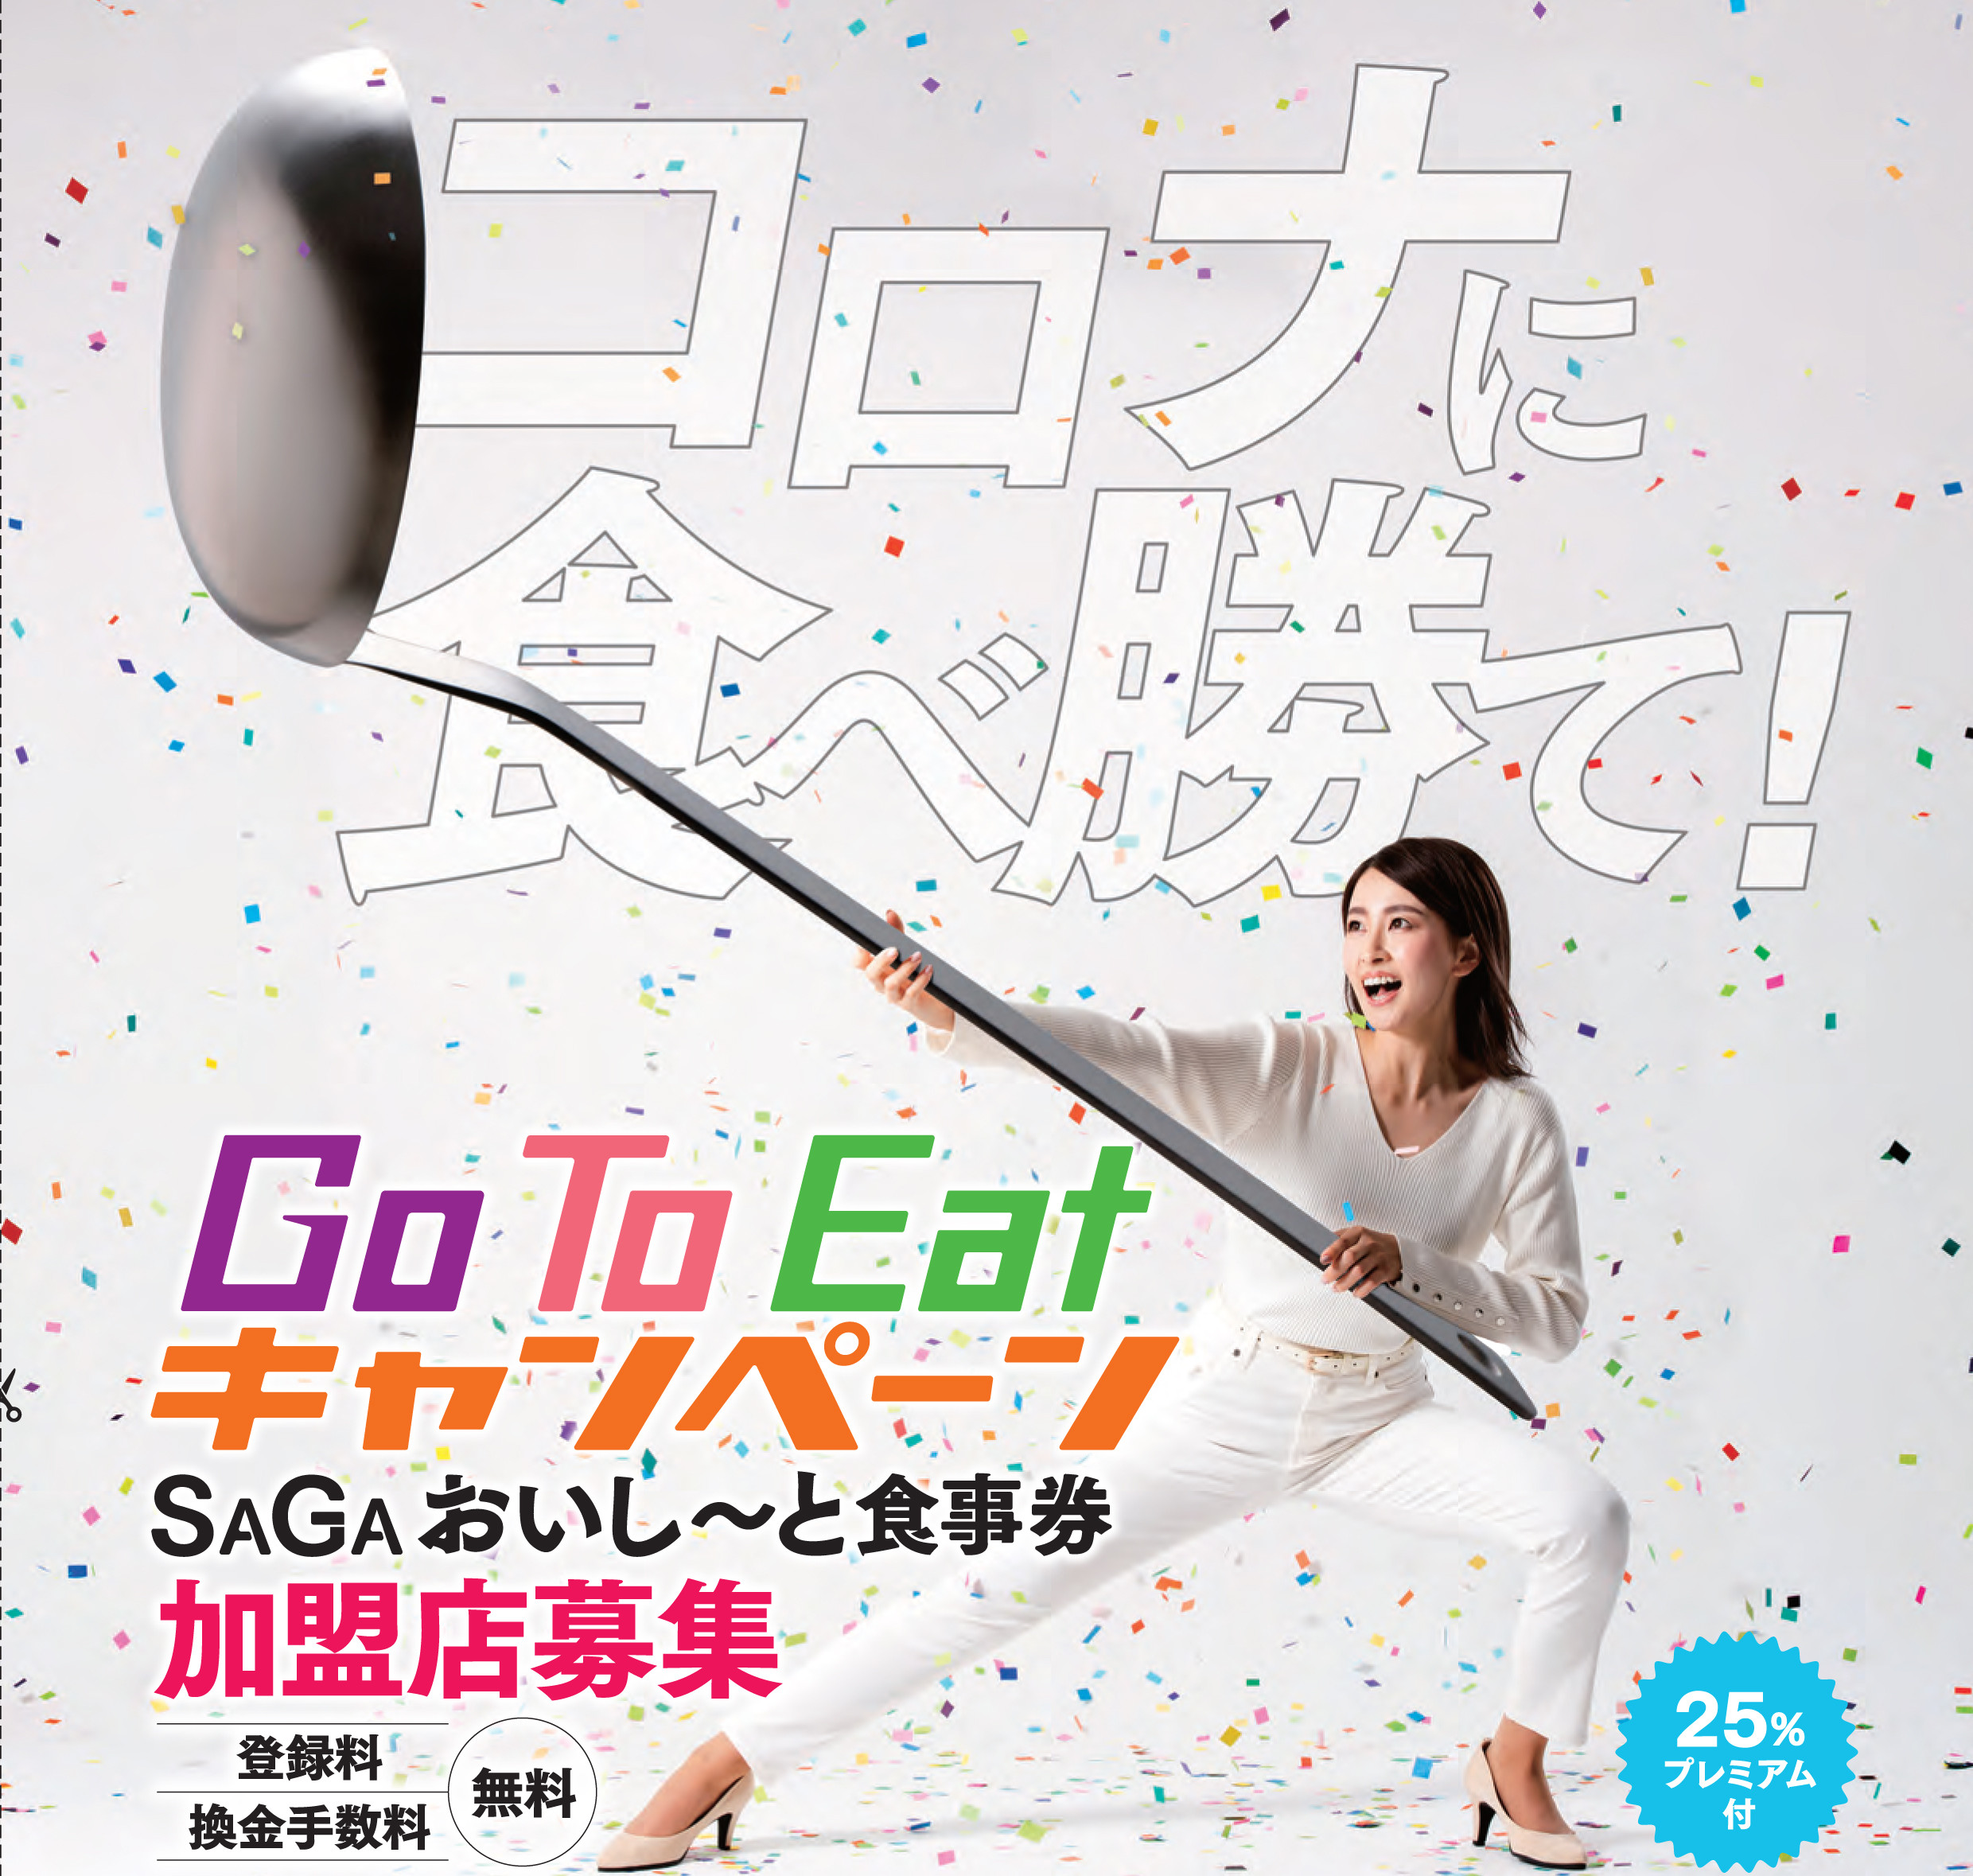 Go To Eatキャンペーン（SAGAおいし～と食事券）の加盟店を募集しています！